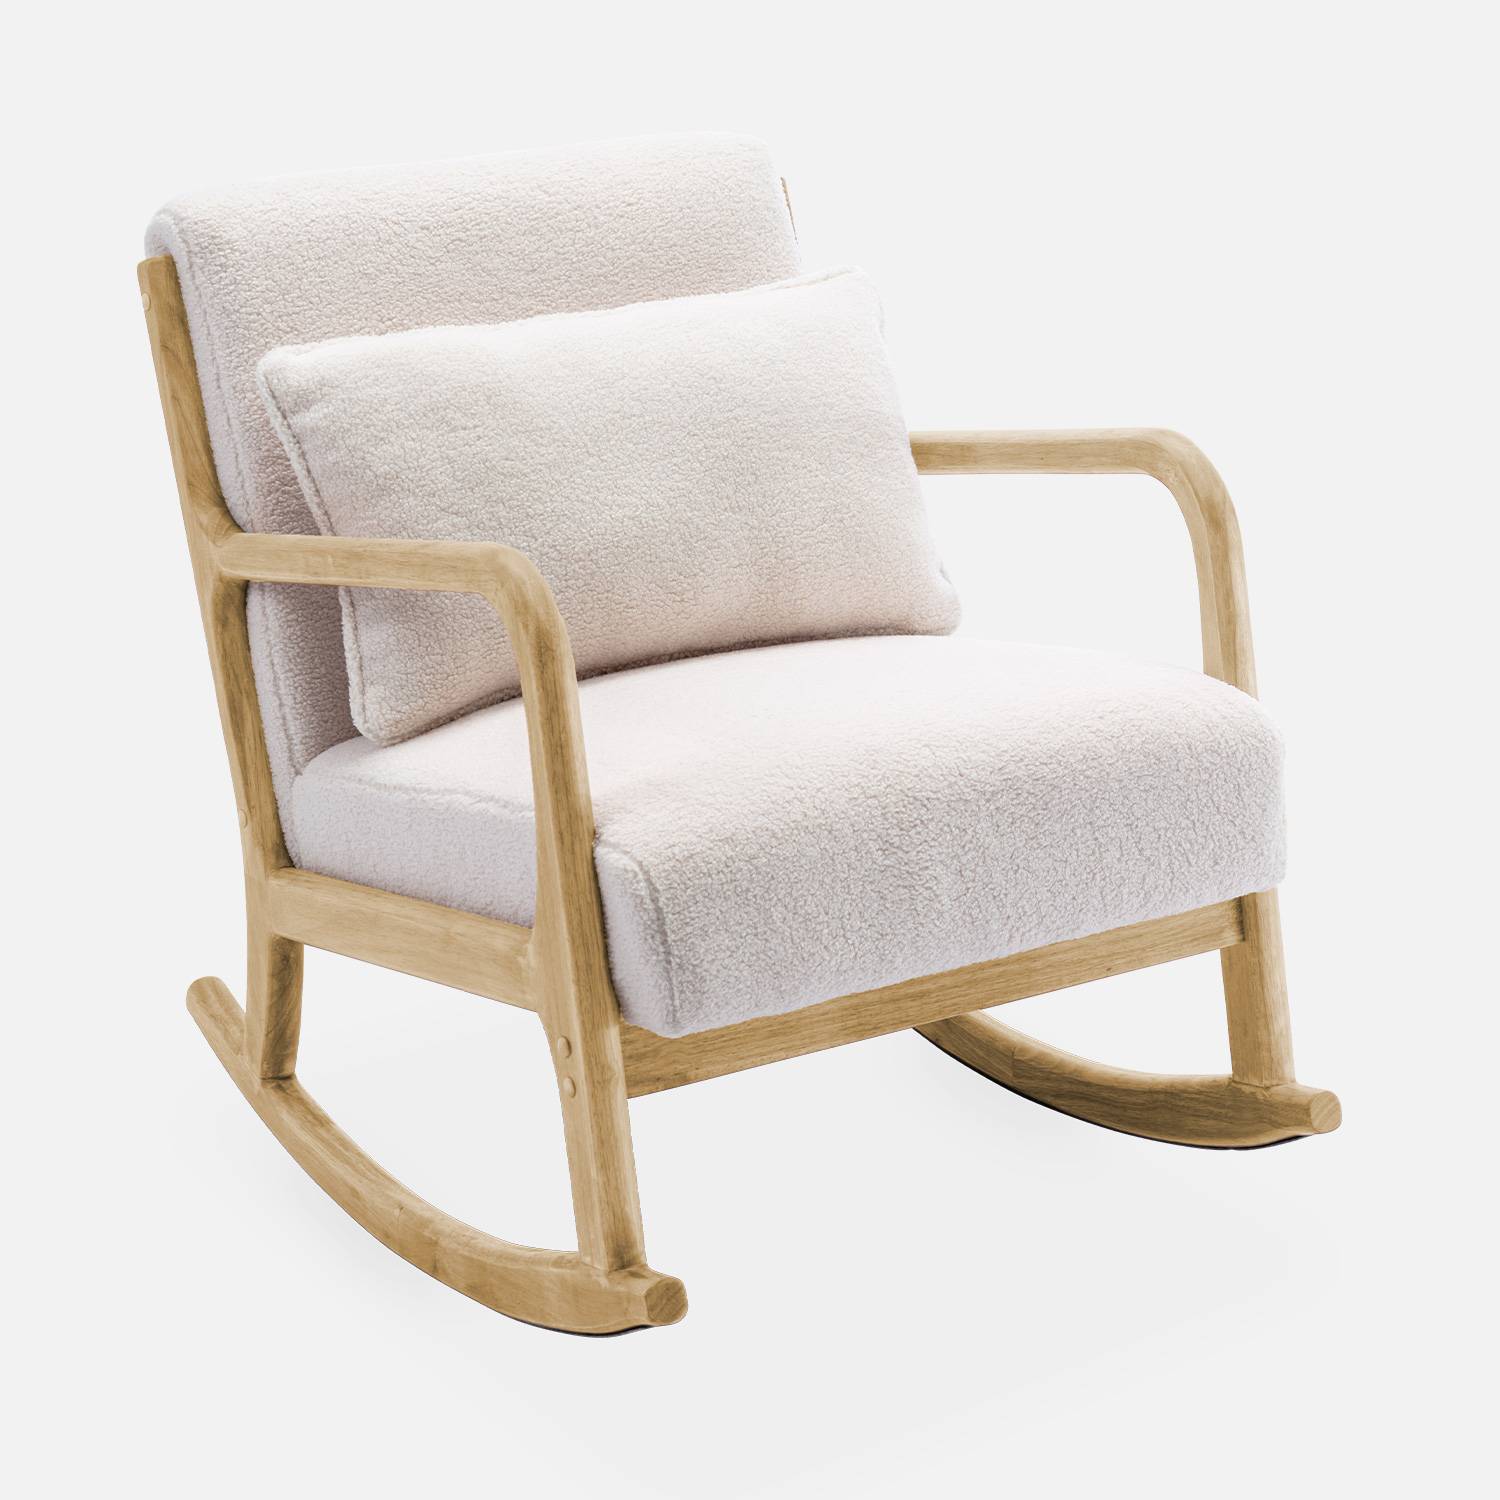 Fauteuil à bascule design en bois et tissu, bouclettes blanches, 1 place, rocking chair scandinave,sweeek,Photo4